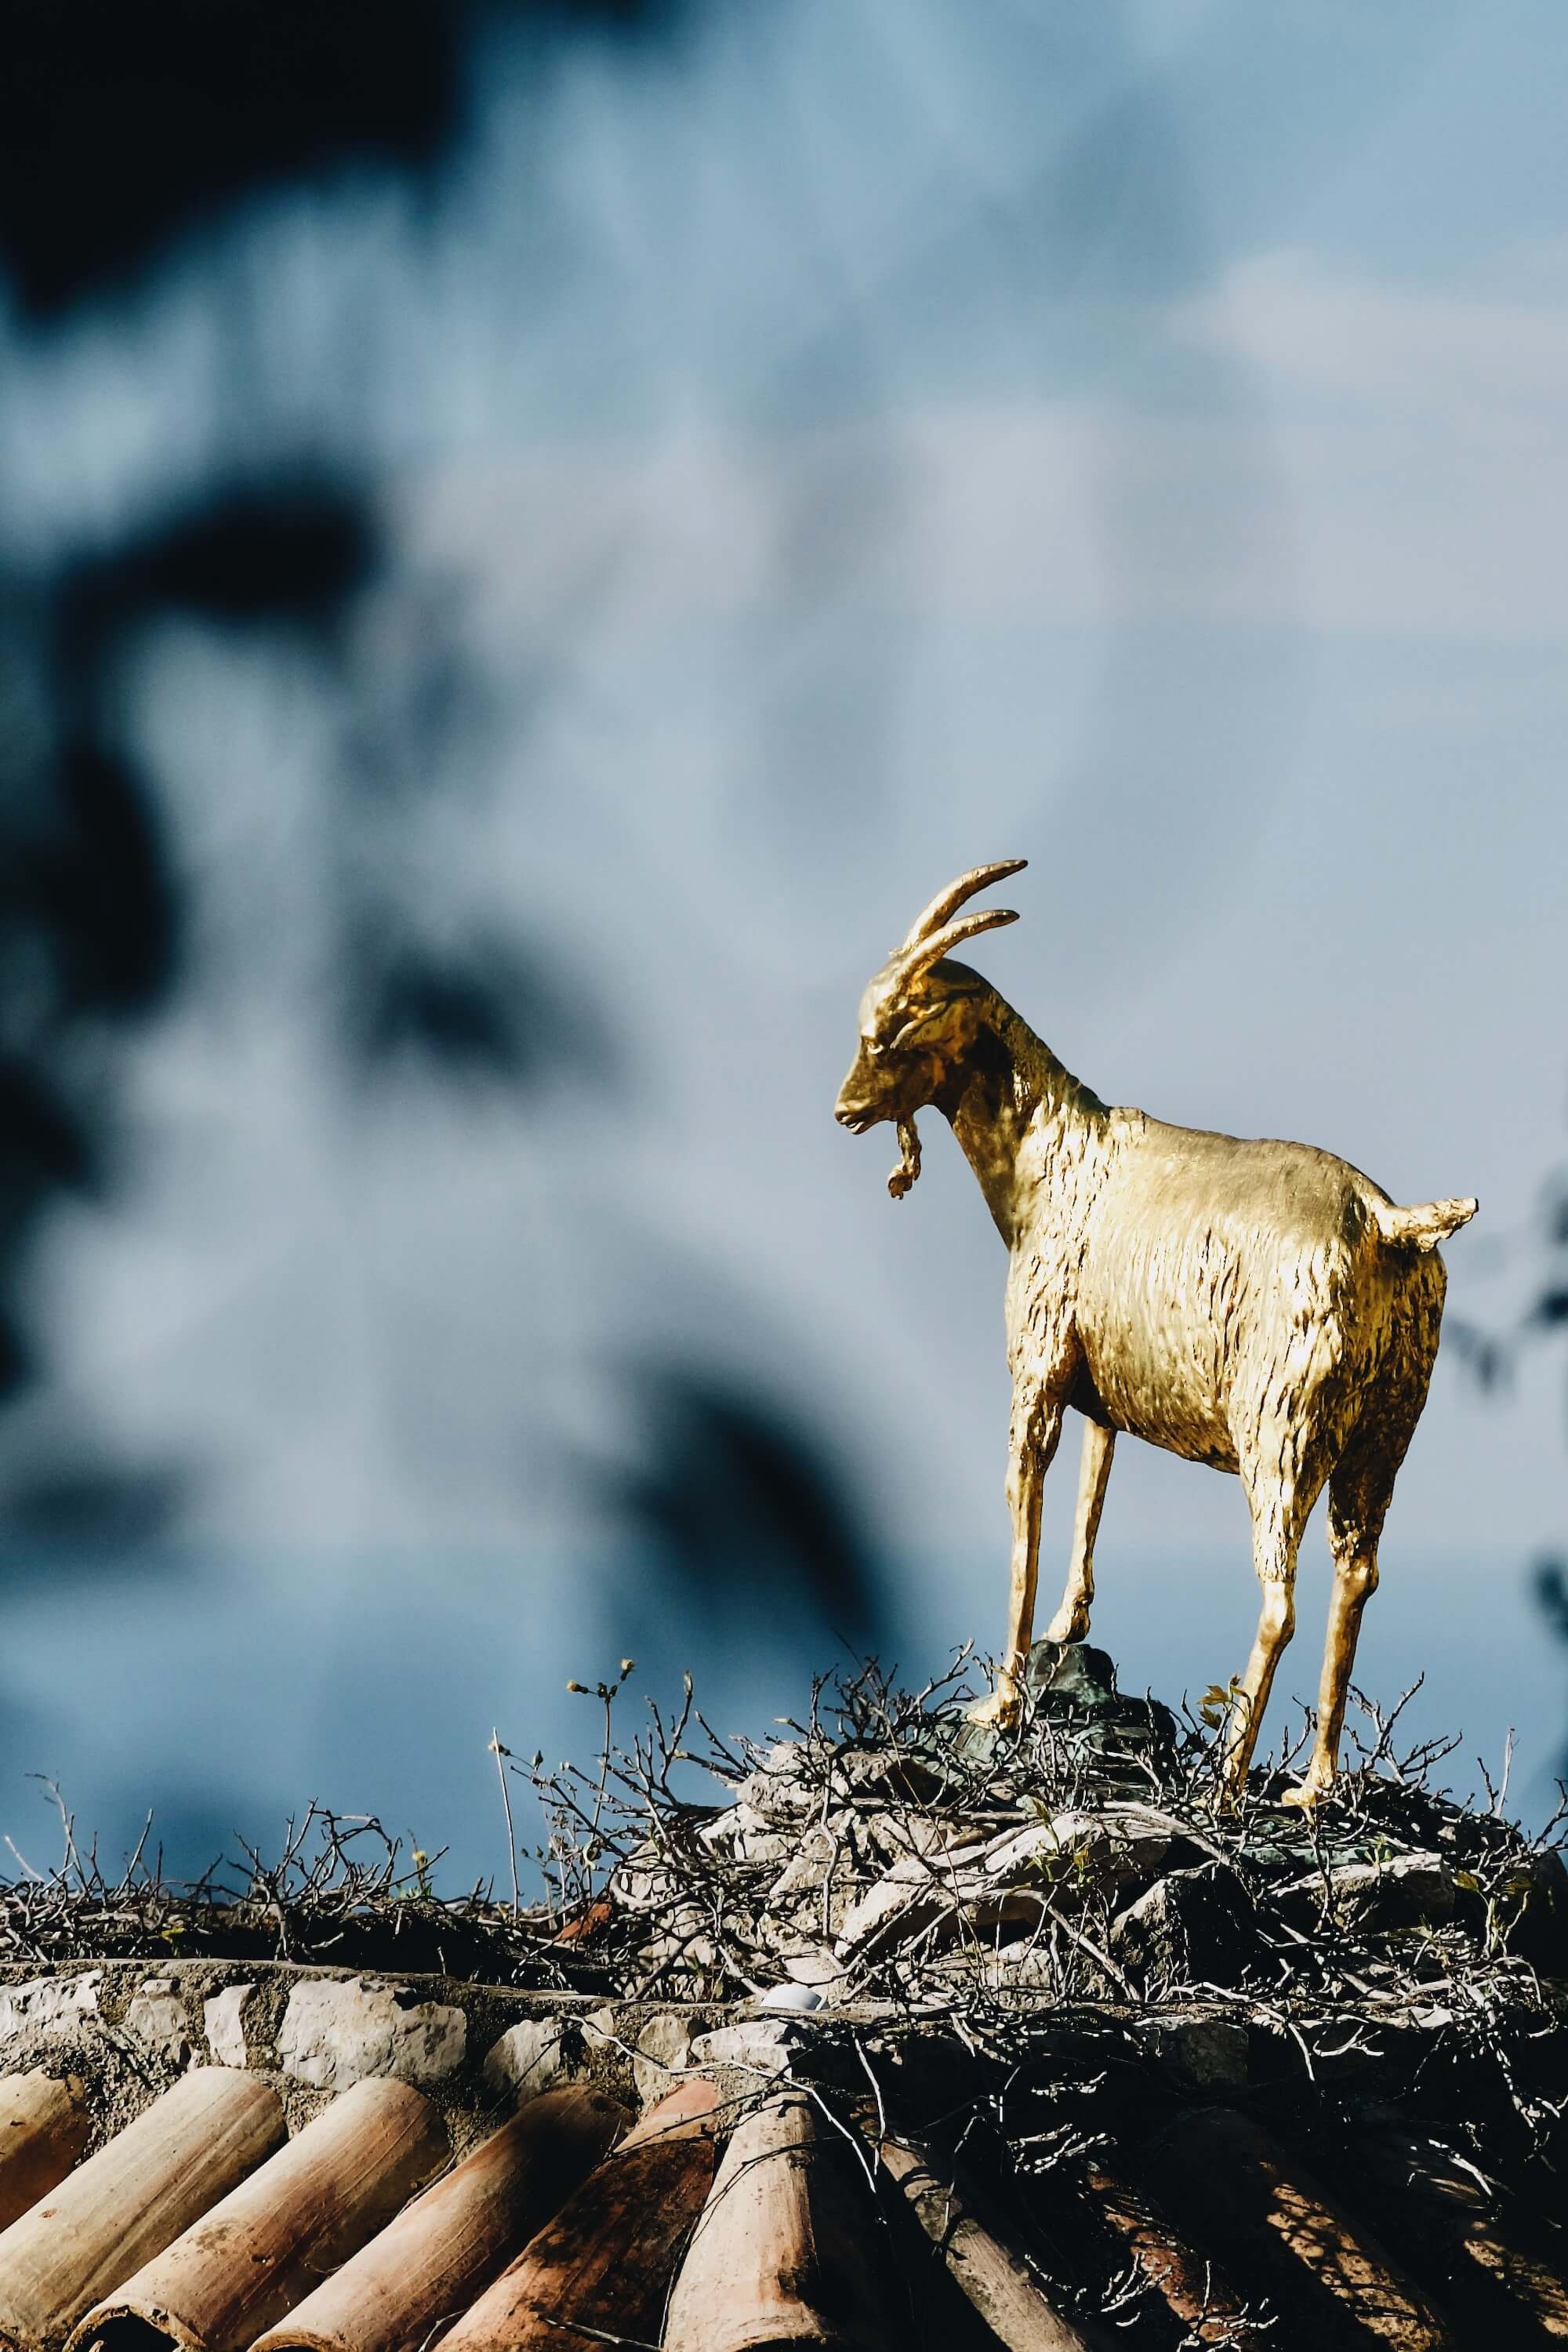 The golden goat